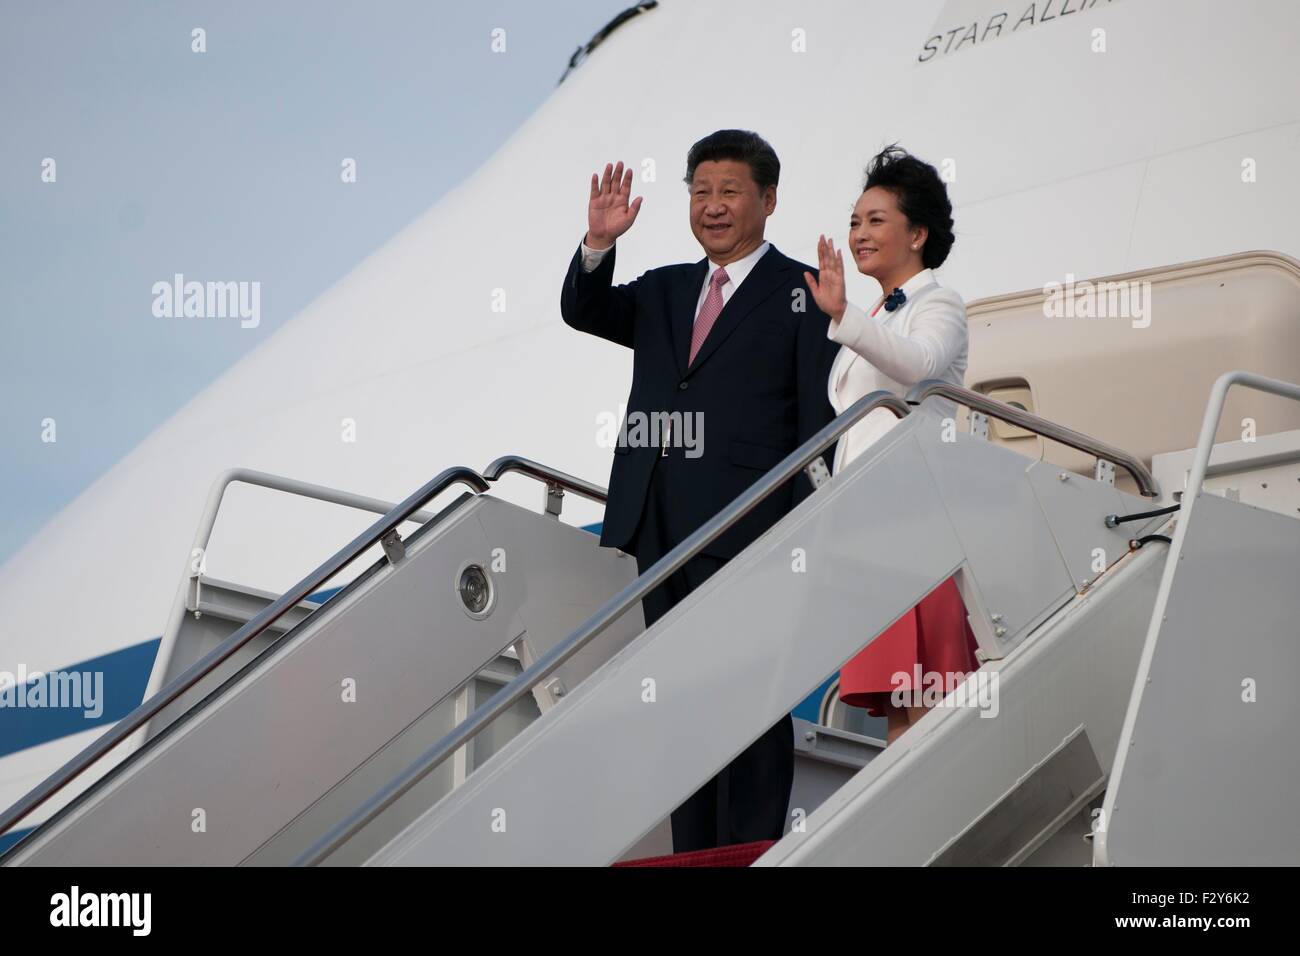 Le président chinois Xi Jinping vagues qu'il obtient d'un avion sur Joint Base Andrews, dans le Maryland, le 24 septembre 2015. Xi s'est rendu dans la région de Washington pour rencontrer les dirigeants américains pour une visite d'état. Banque D'Images